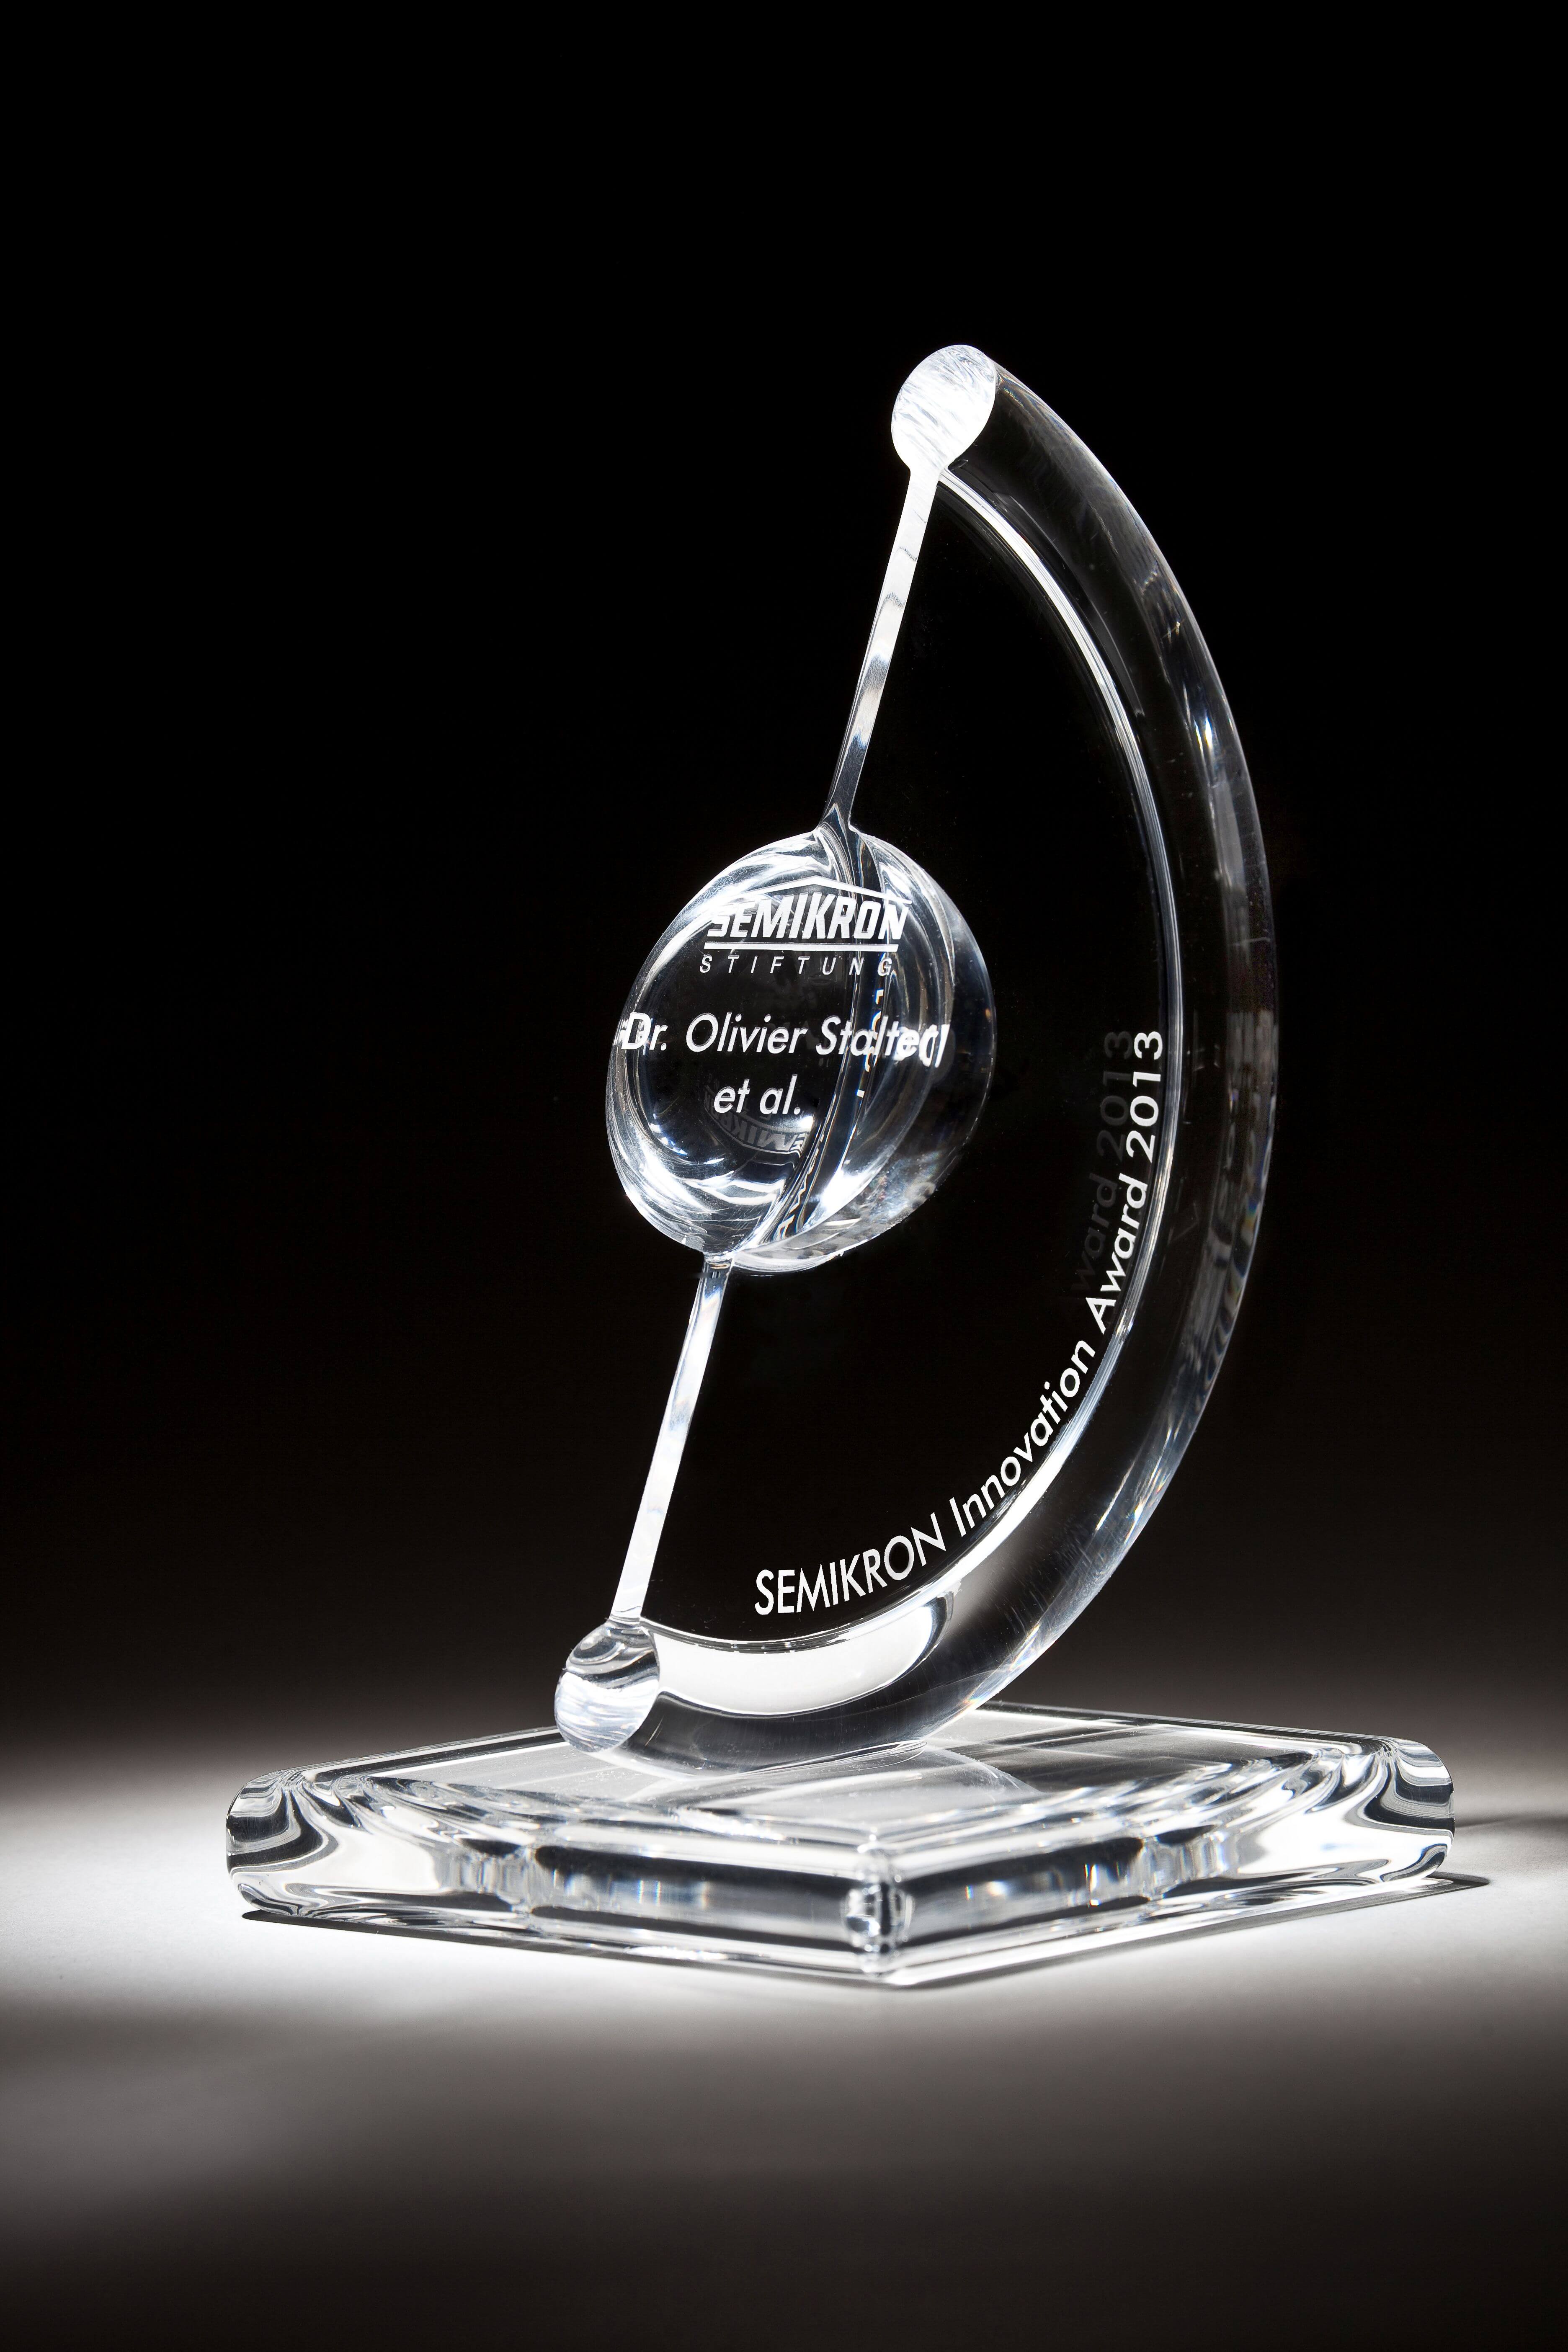 Der SEMIKRON-Innovation Award 2013 